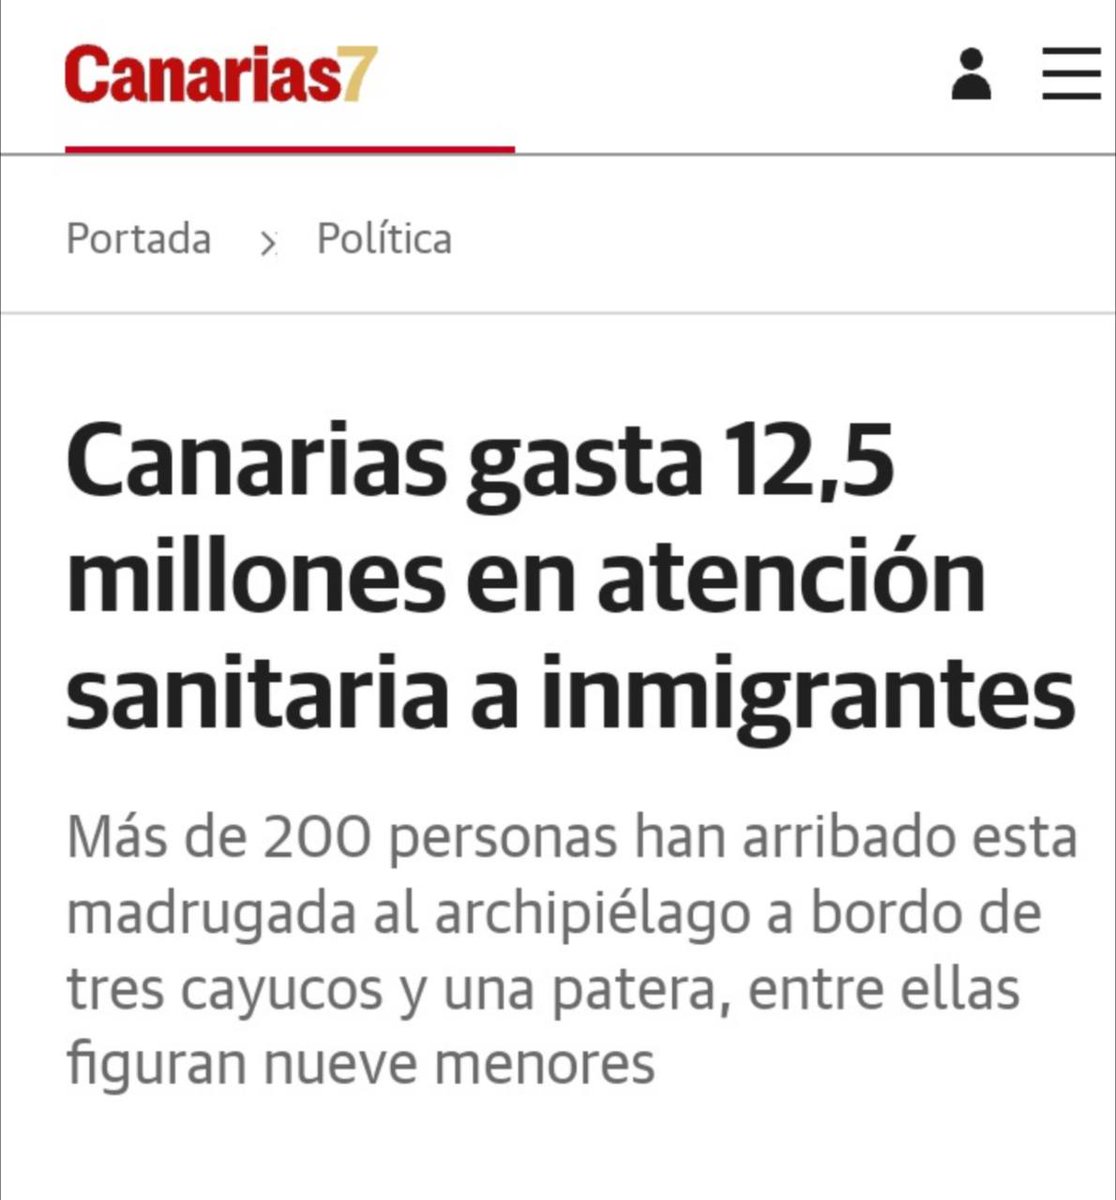 📢 #Canarias gasta 12.5 millones en atención sanitaria a #inmigrantes.